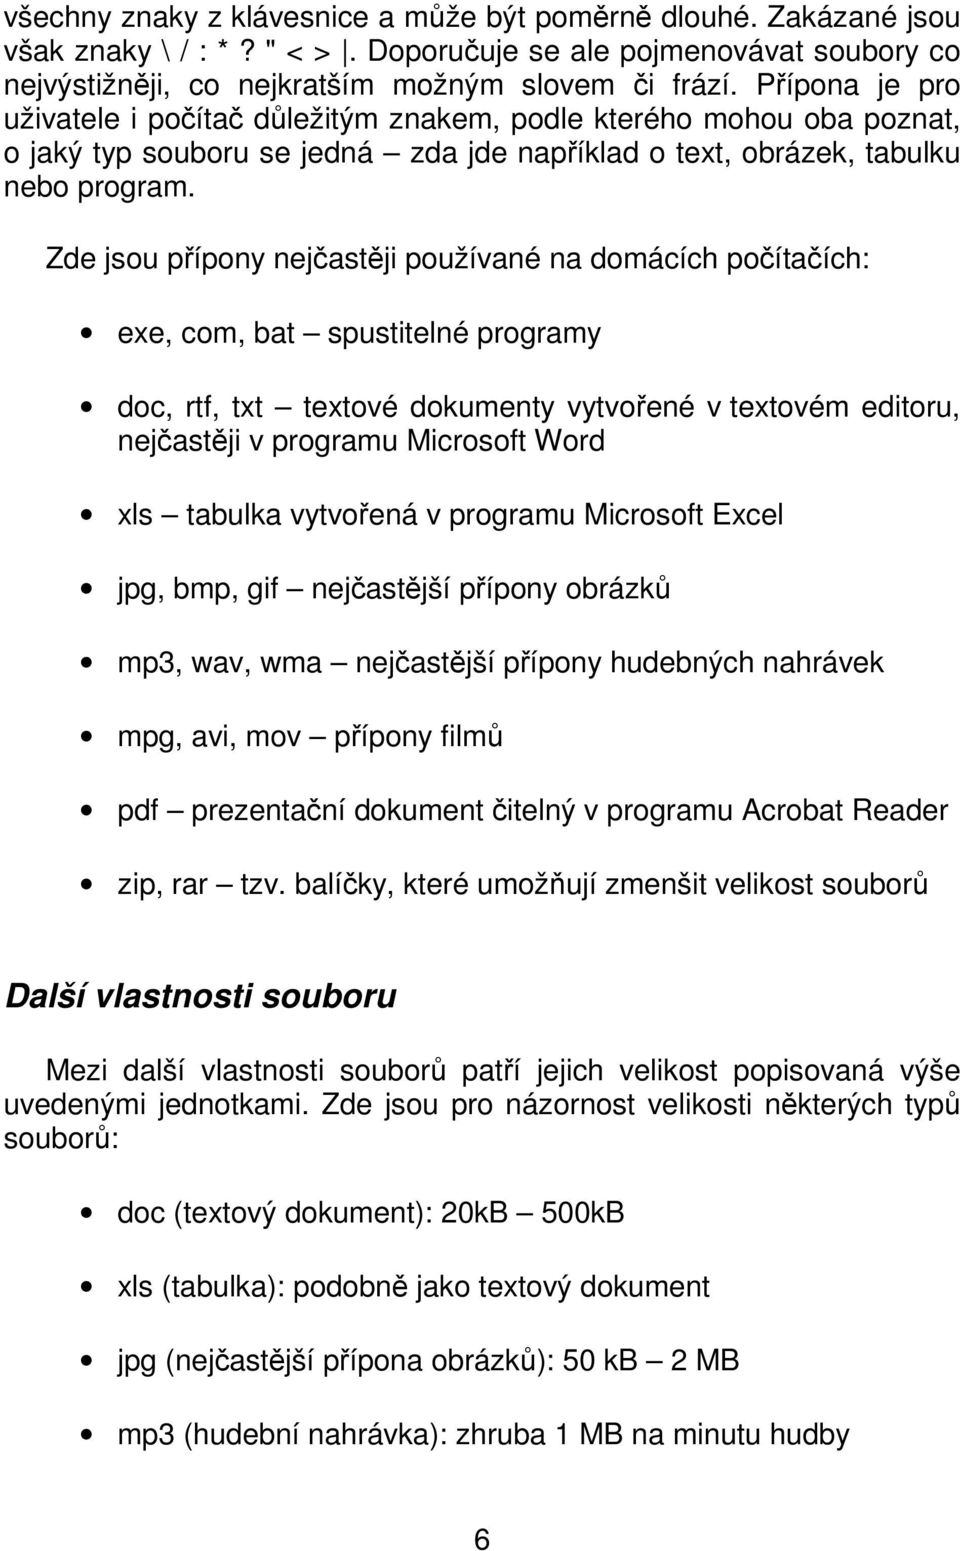 Zde jsou přípony nejčastěji používané na domácích počítačích: exe, com, bat spustitelné programy doc, rtf, txt textové dokumenty vytvořené v textovém editoru, nejčastěji v programu Microsoft Word xls